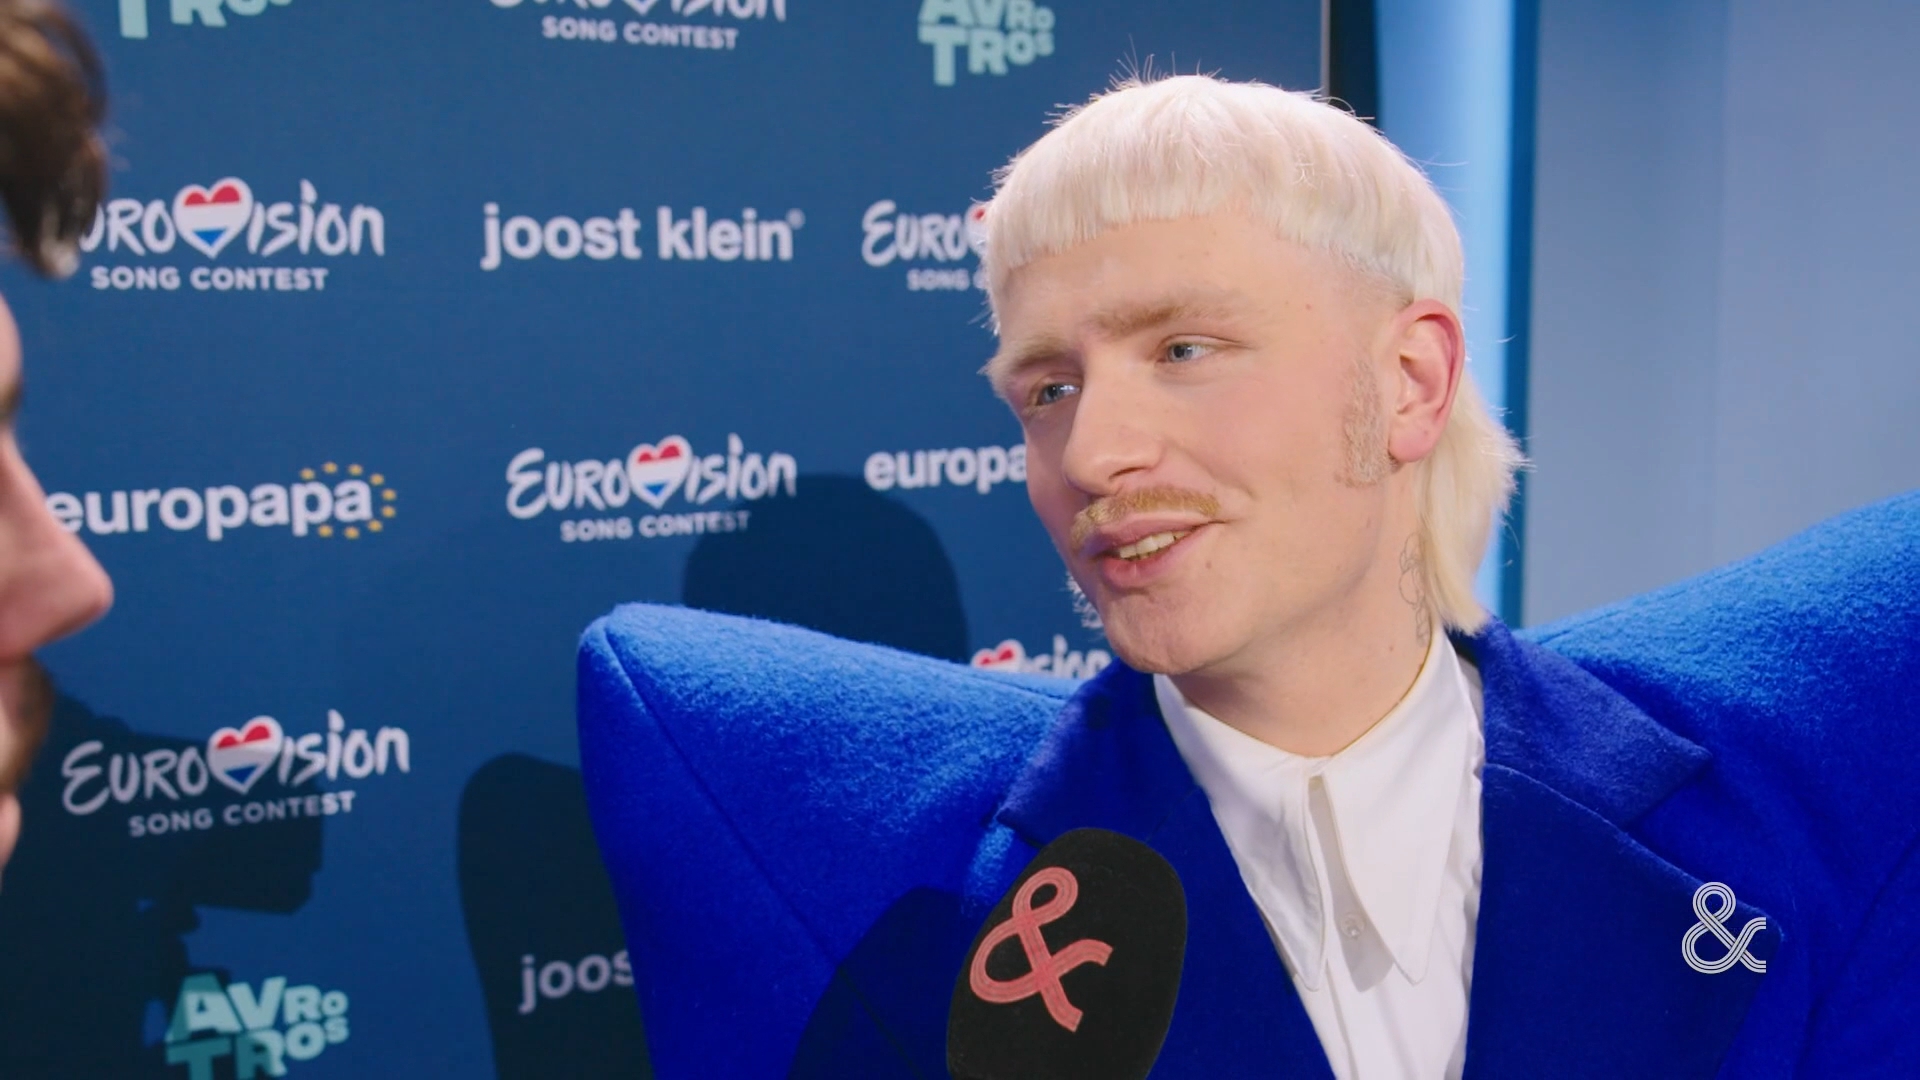 Waar gaat Joost Kleins Songfestivalinzending Europapa over?